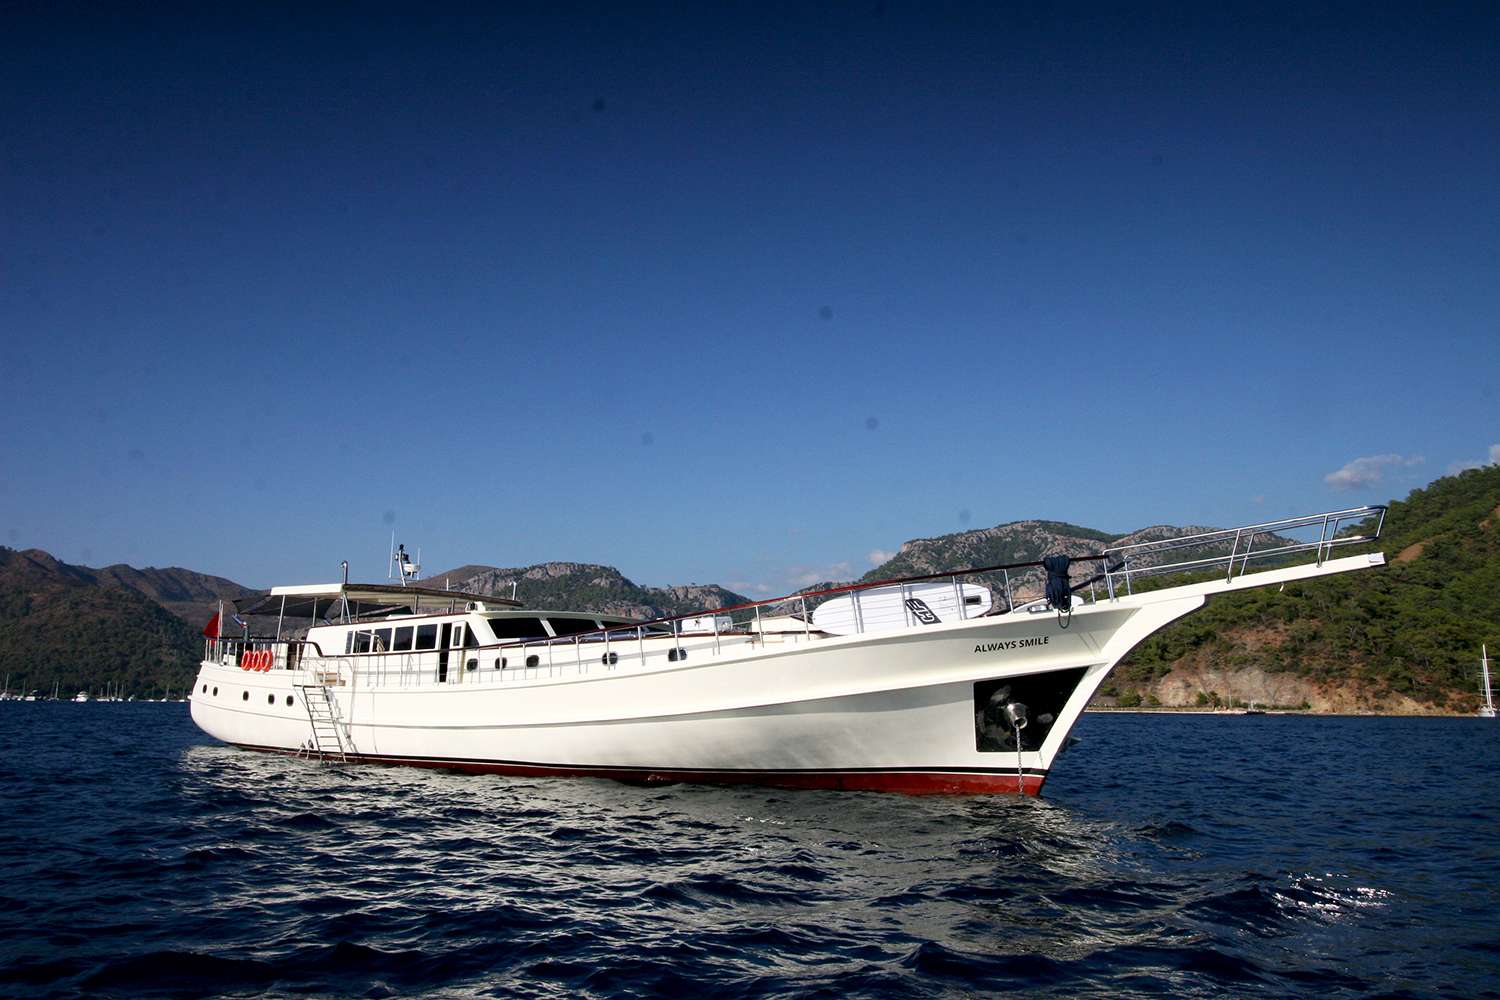 ALWAYS SMILE - Motor Boat Charter Turkey & Boat hire in Turkey 1